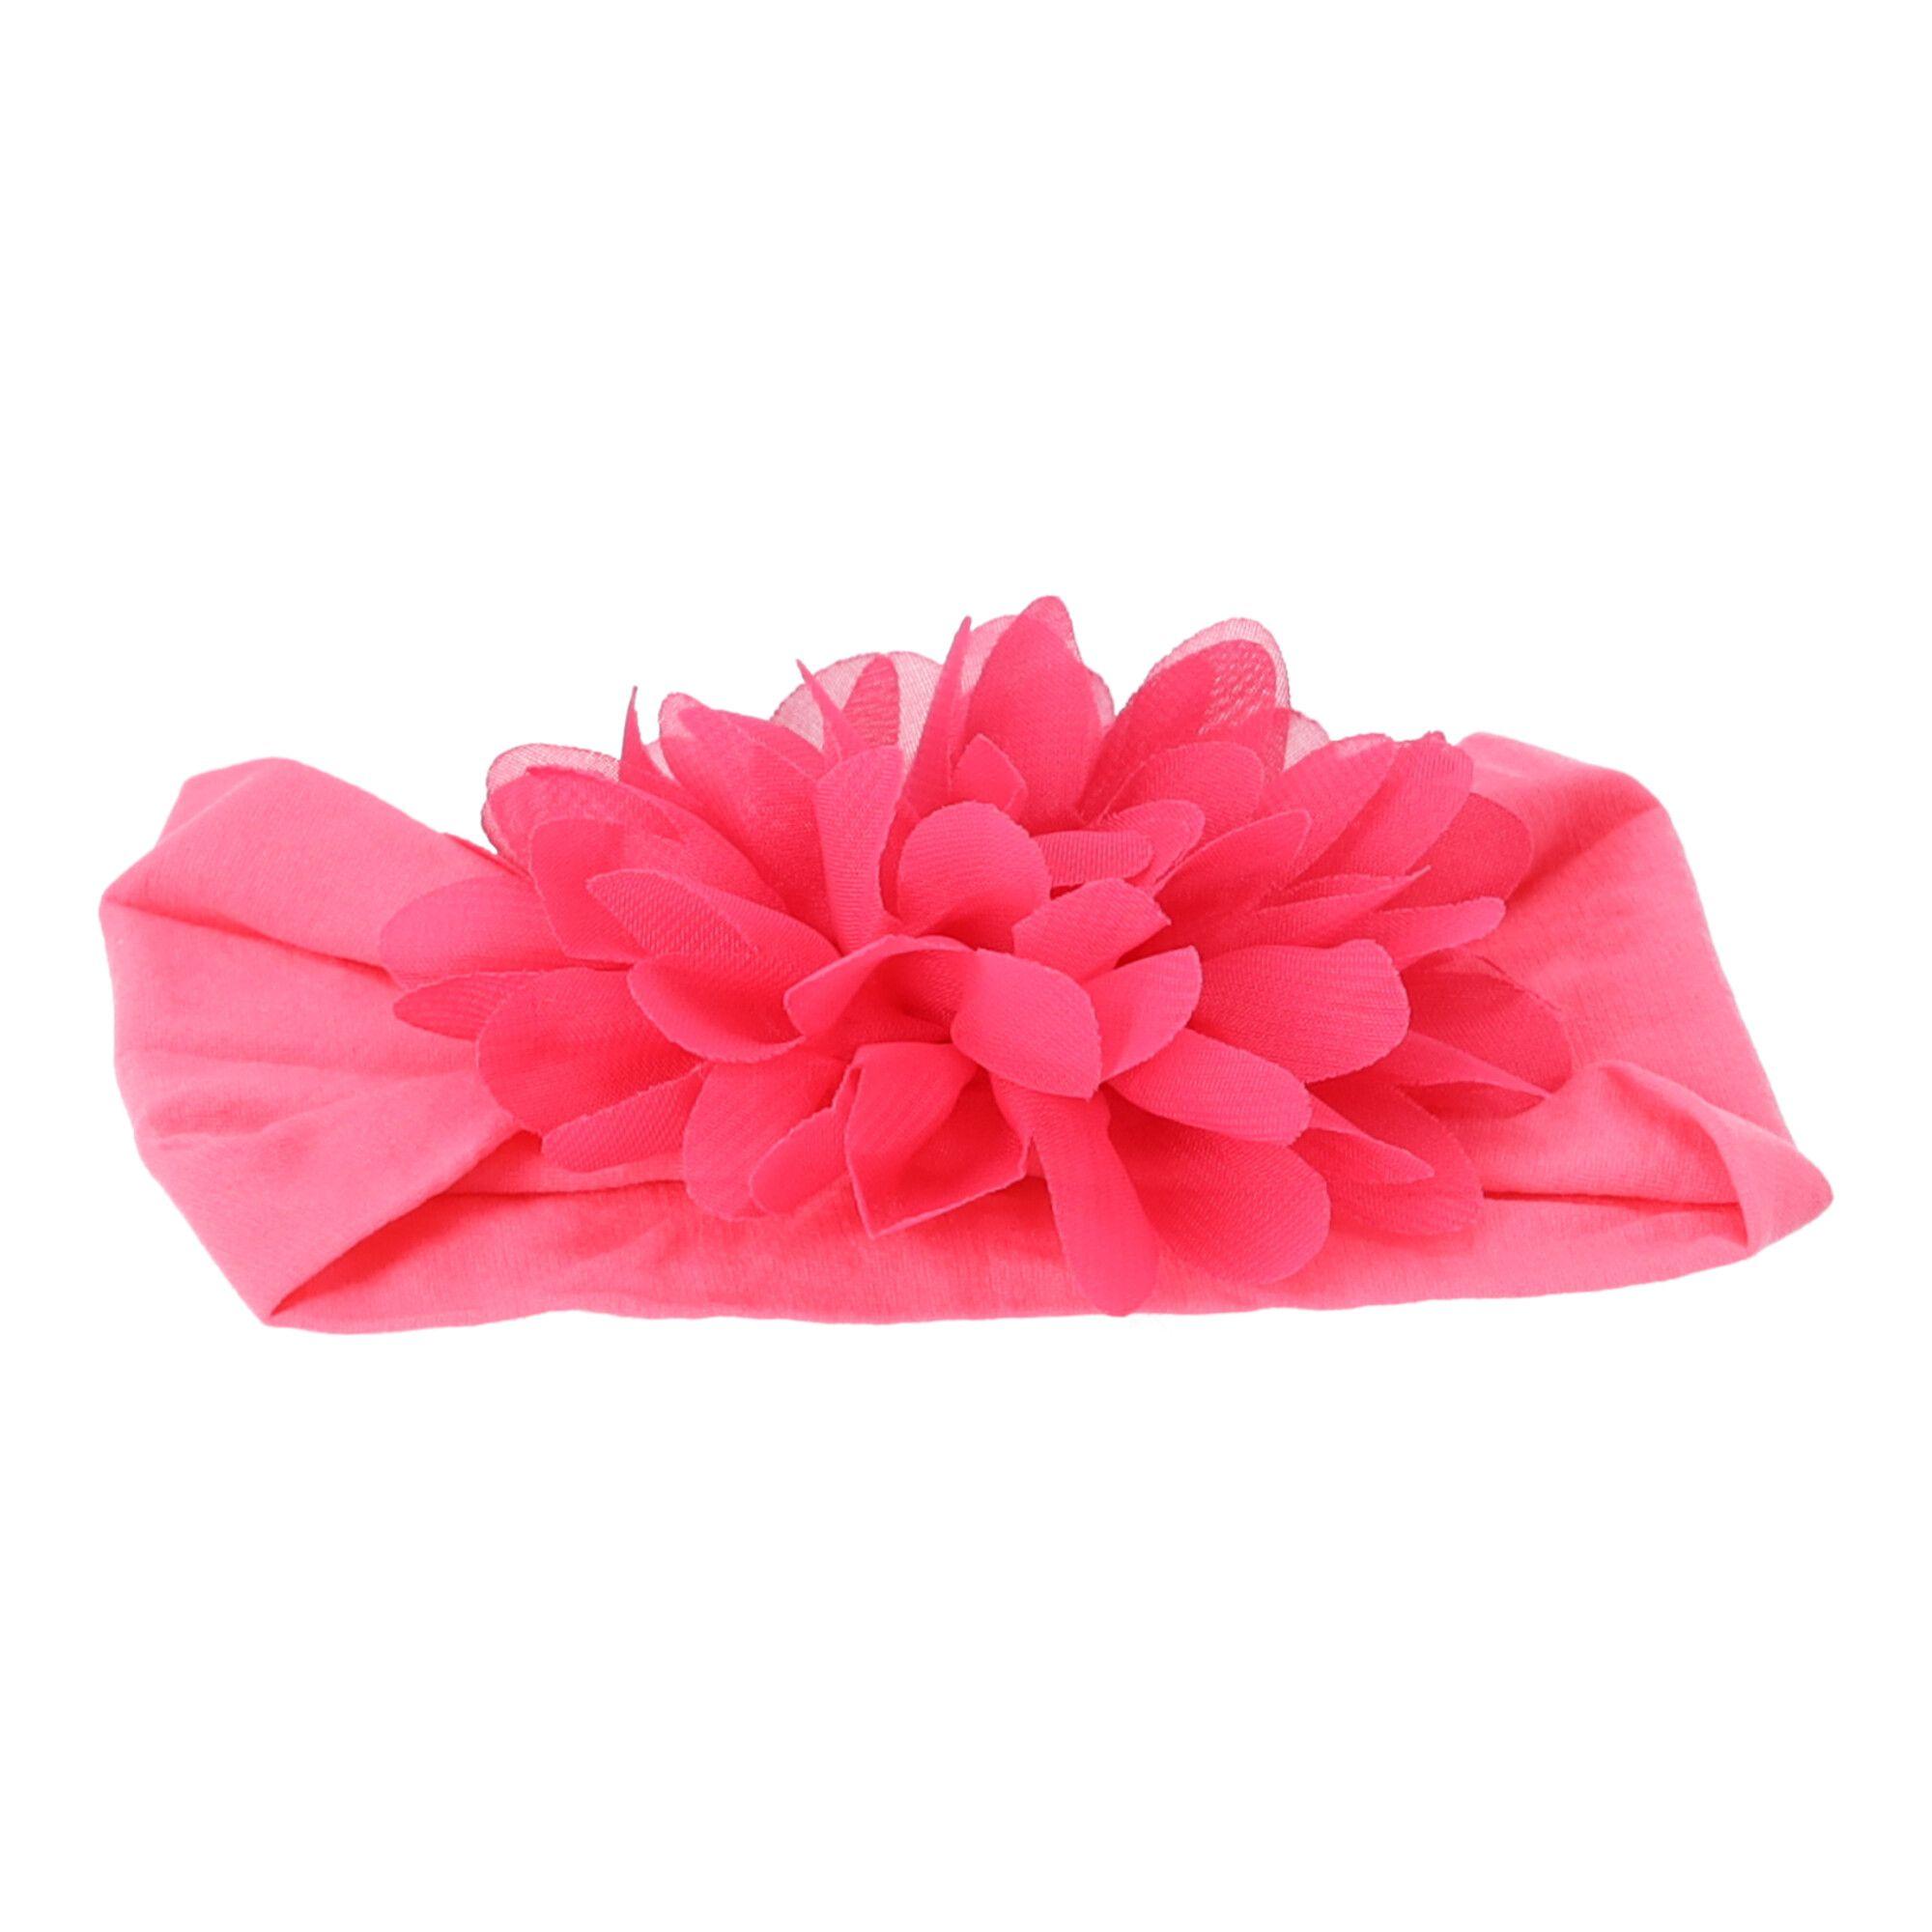 Baby headband with a flower - dark pink, wide